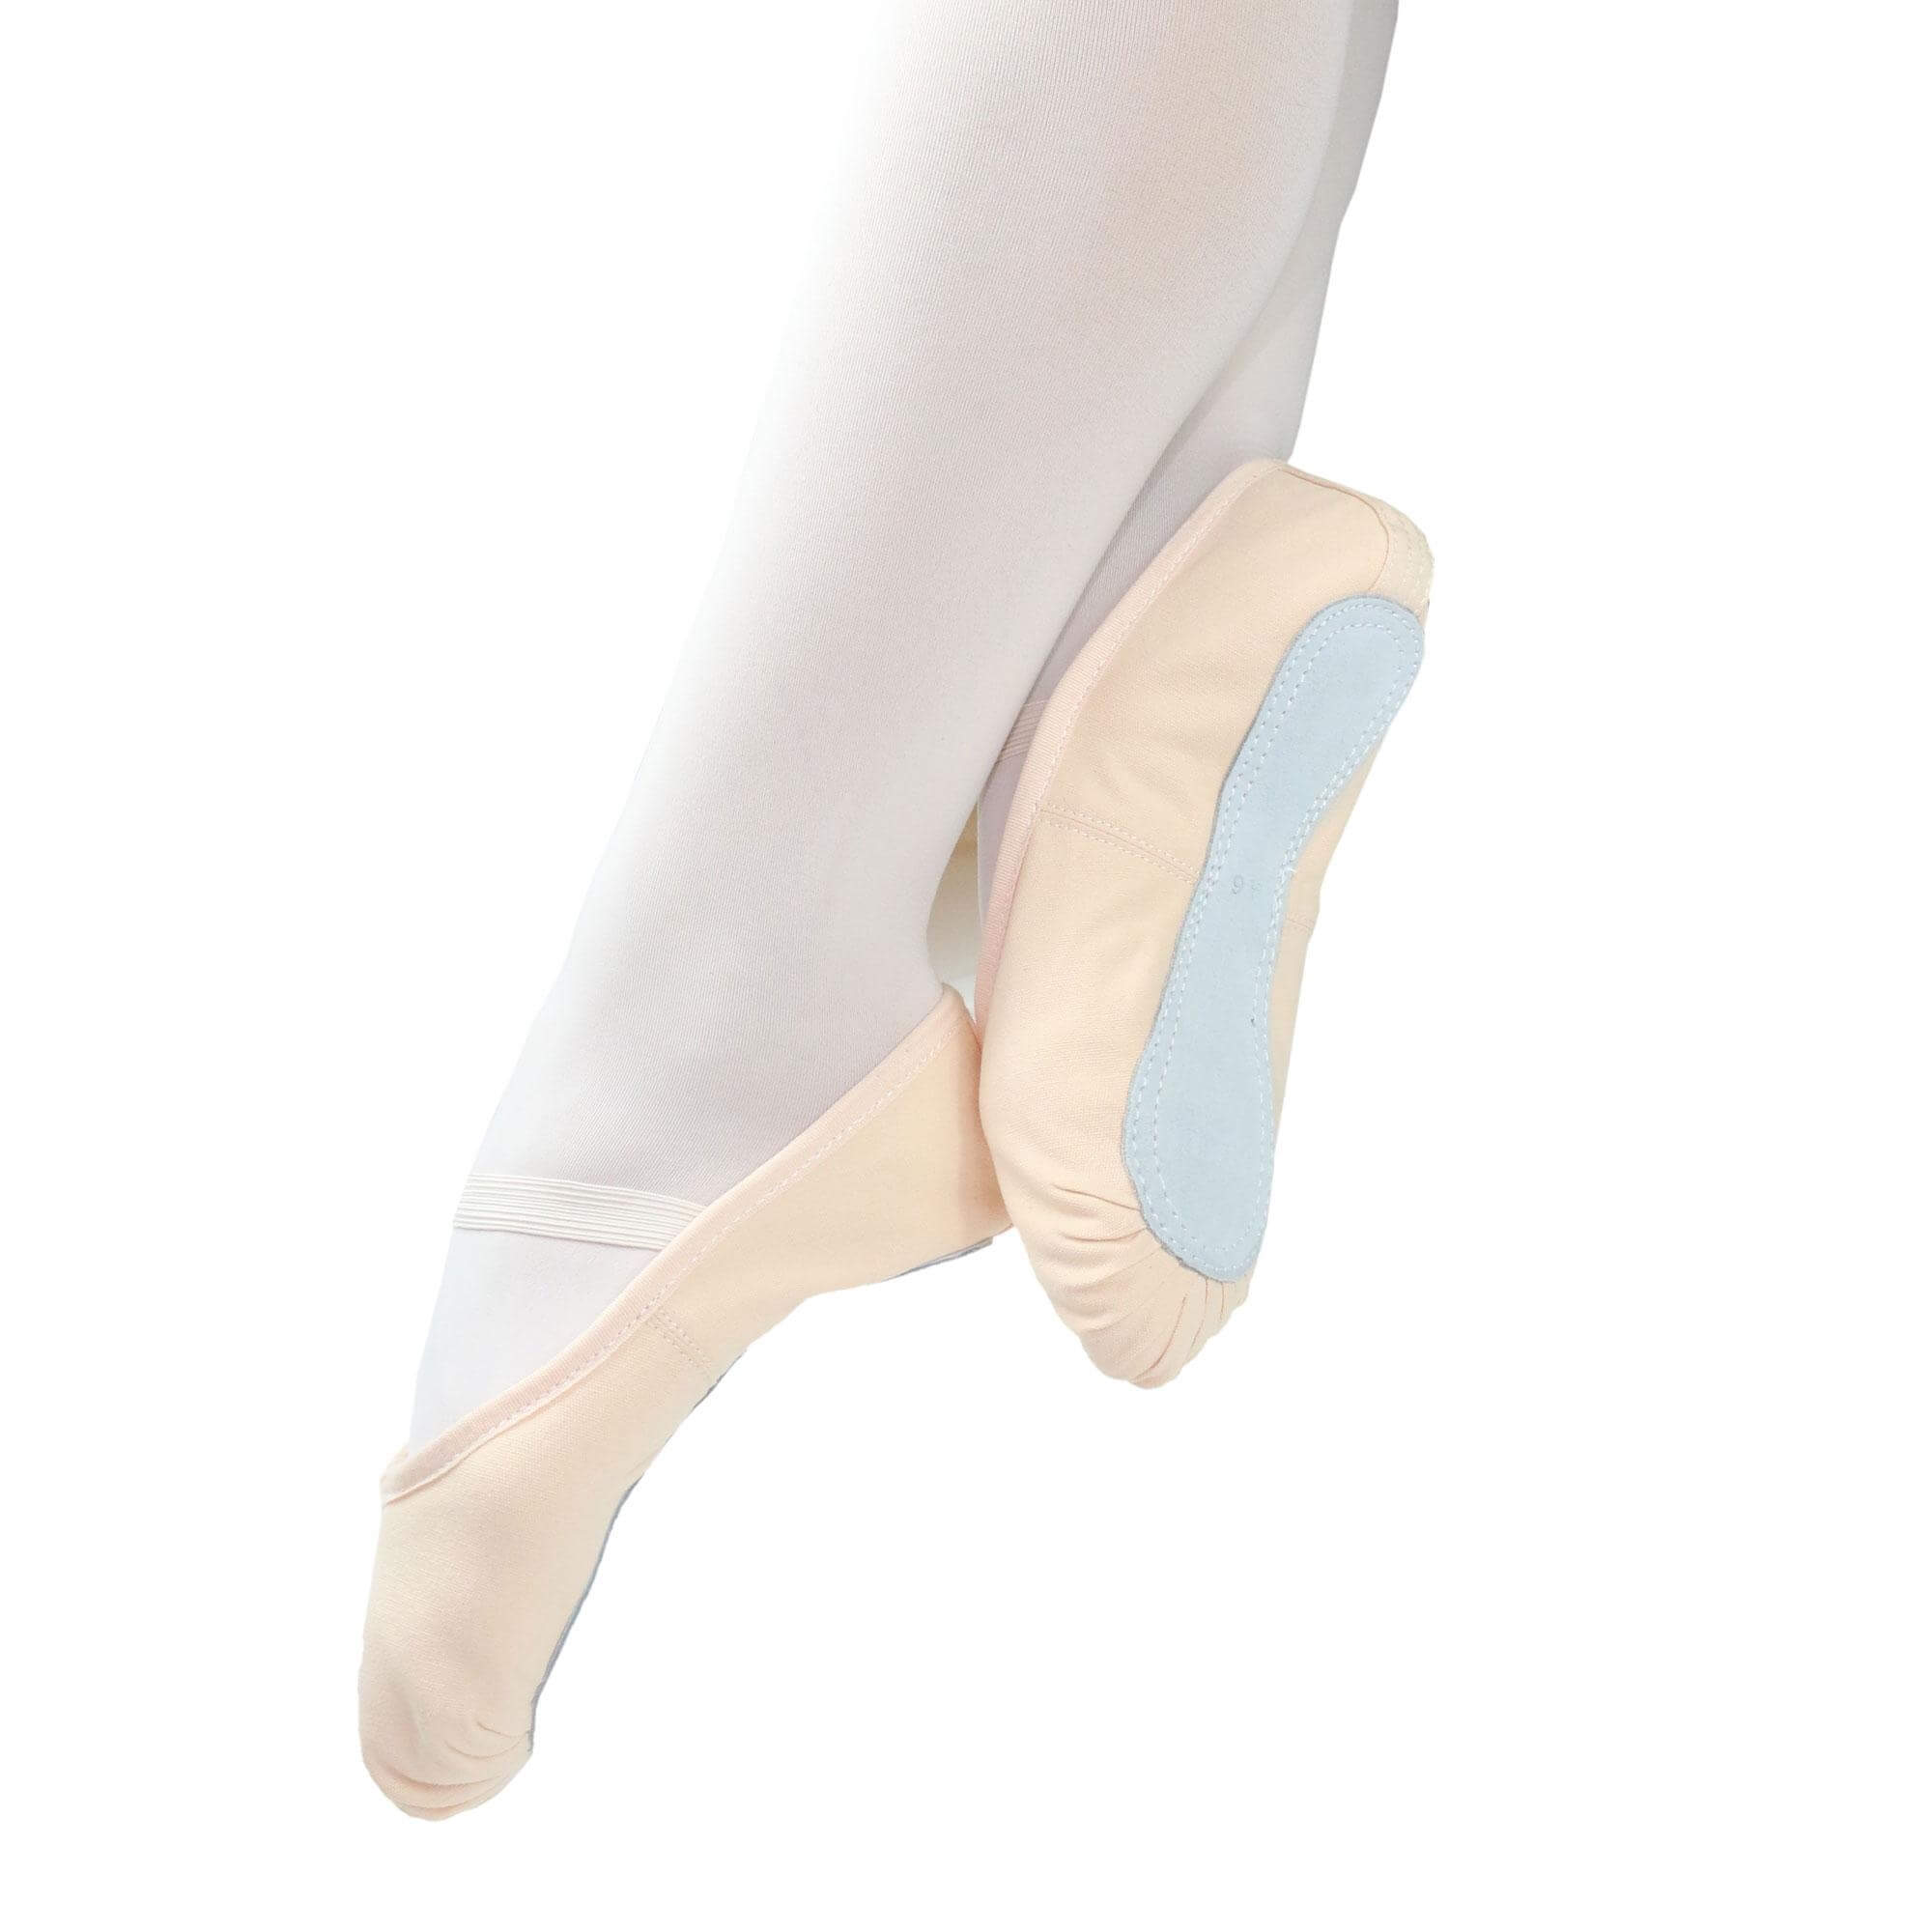 Danzcue Child Full Sole Canvas Ballet Slipper - Click Image to Close